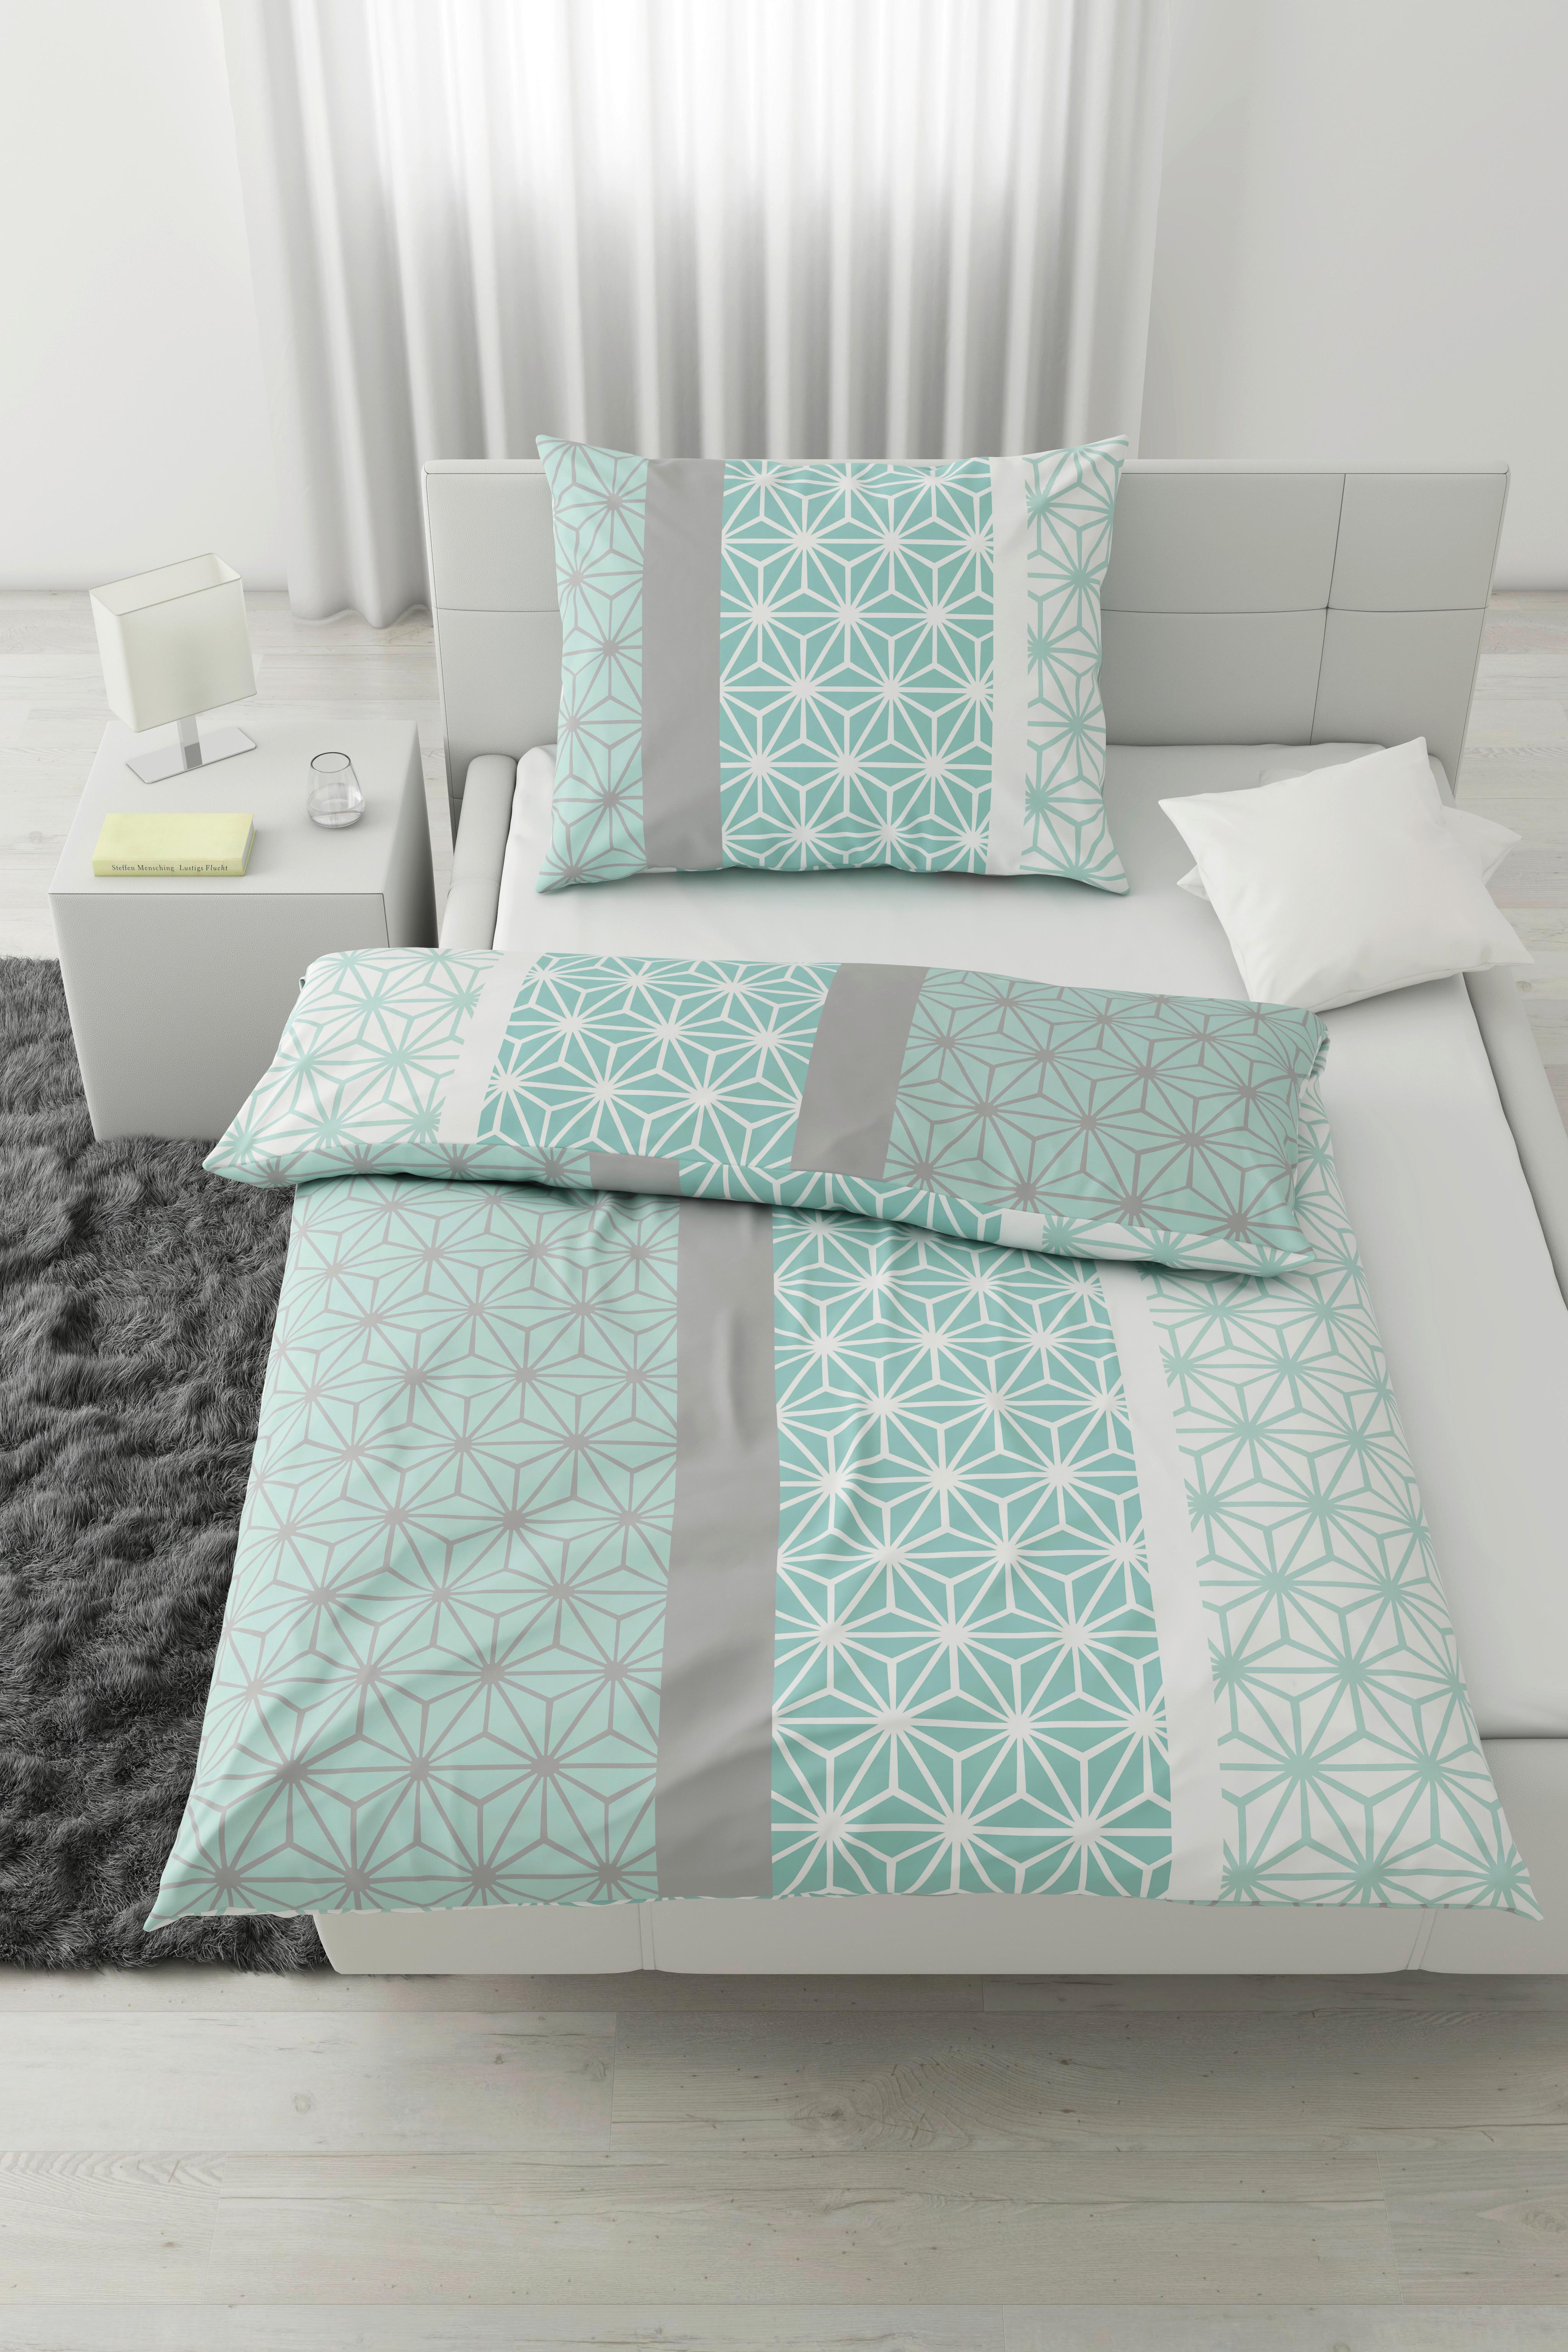 Lenjerie de pat Selma Based - alb/verde mentă, Konventionell, textil (140/200cm) - Best Price